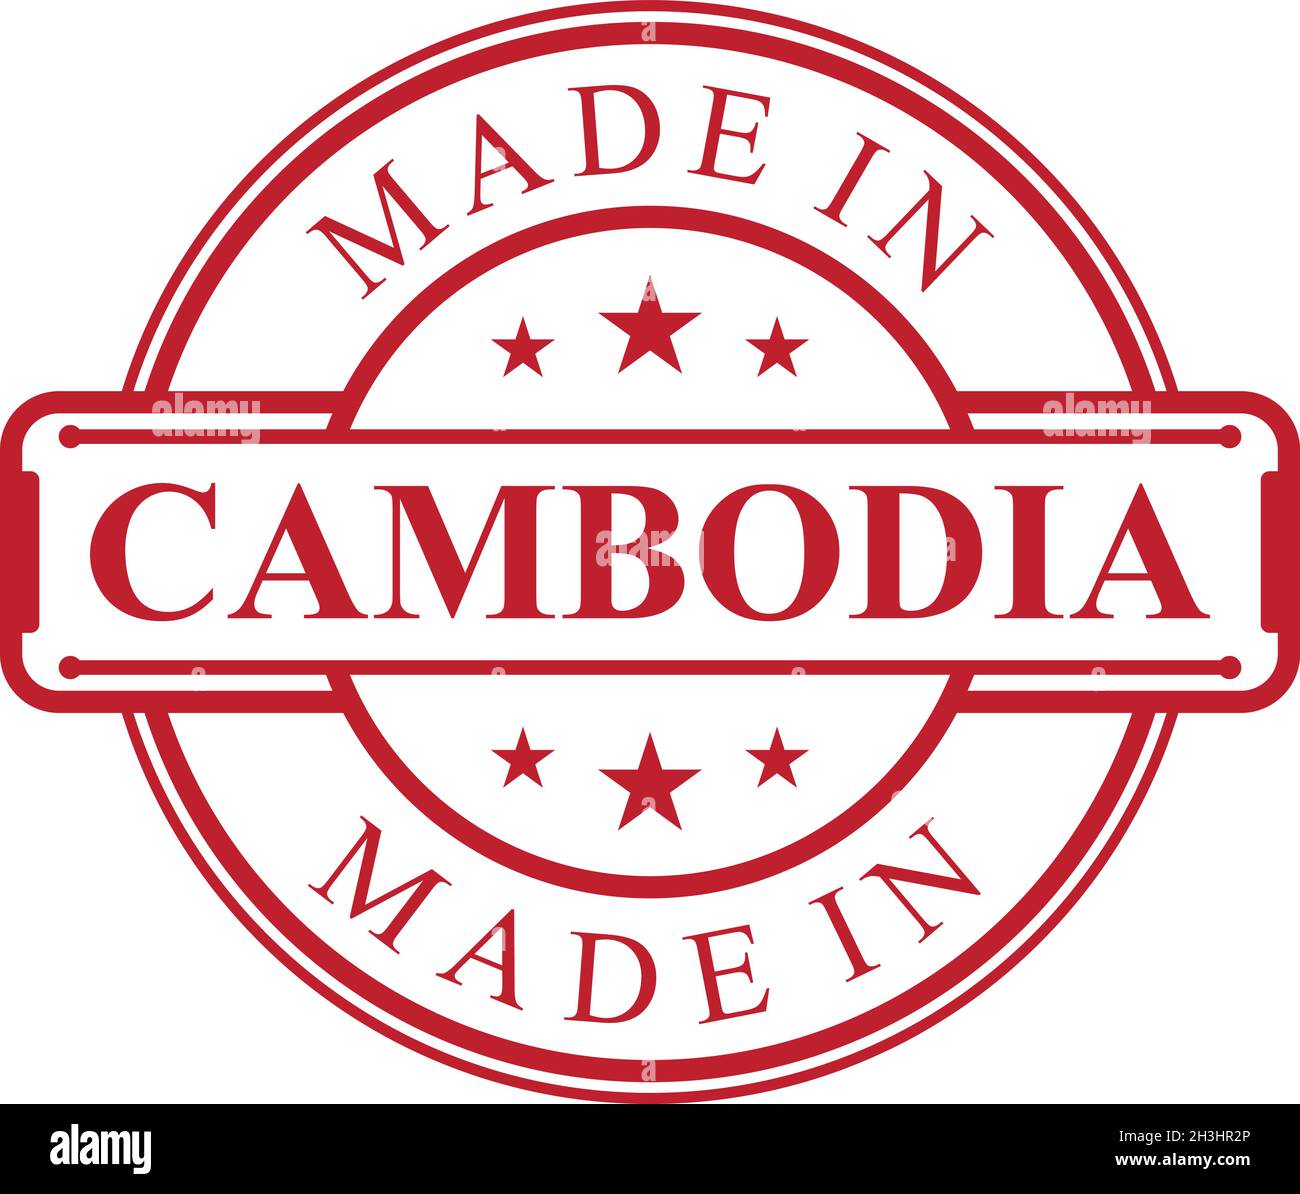 Icona Made in Cambogia etichetta con emblema rosso su sfondo bianco. Elemento di design con logo di qualità vettoriale. Illustrazione vettoriale EPS.8 EPS.10 Illustrazione Vettoriale